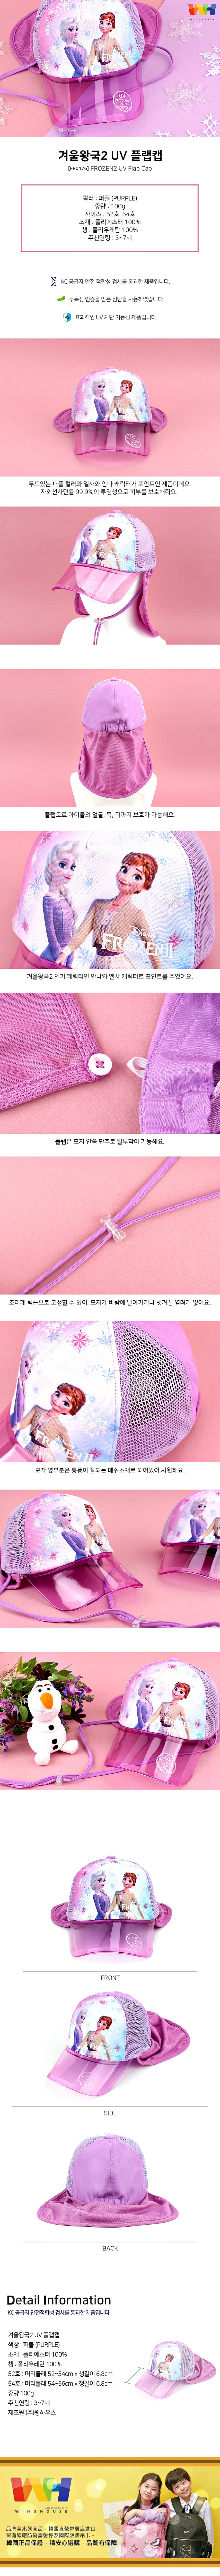 韓國winghouse冰雪奇緣2抗UV護頸遮陽帽【FR0176】